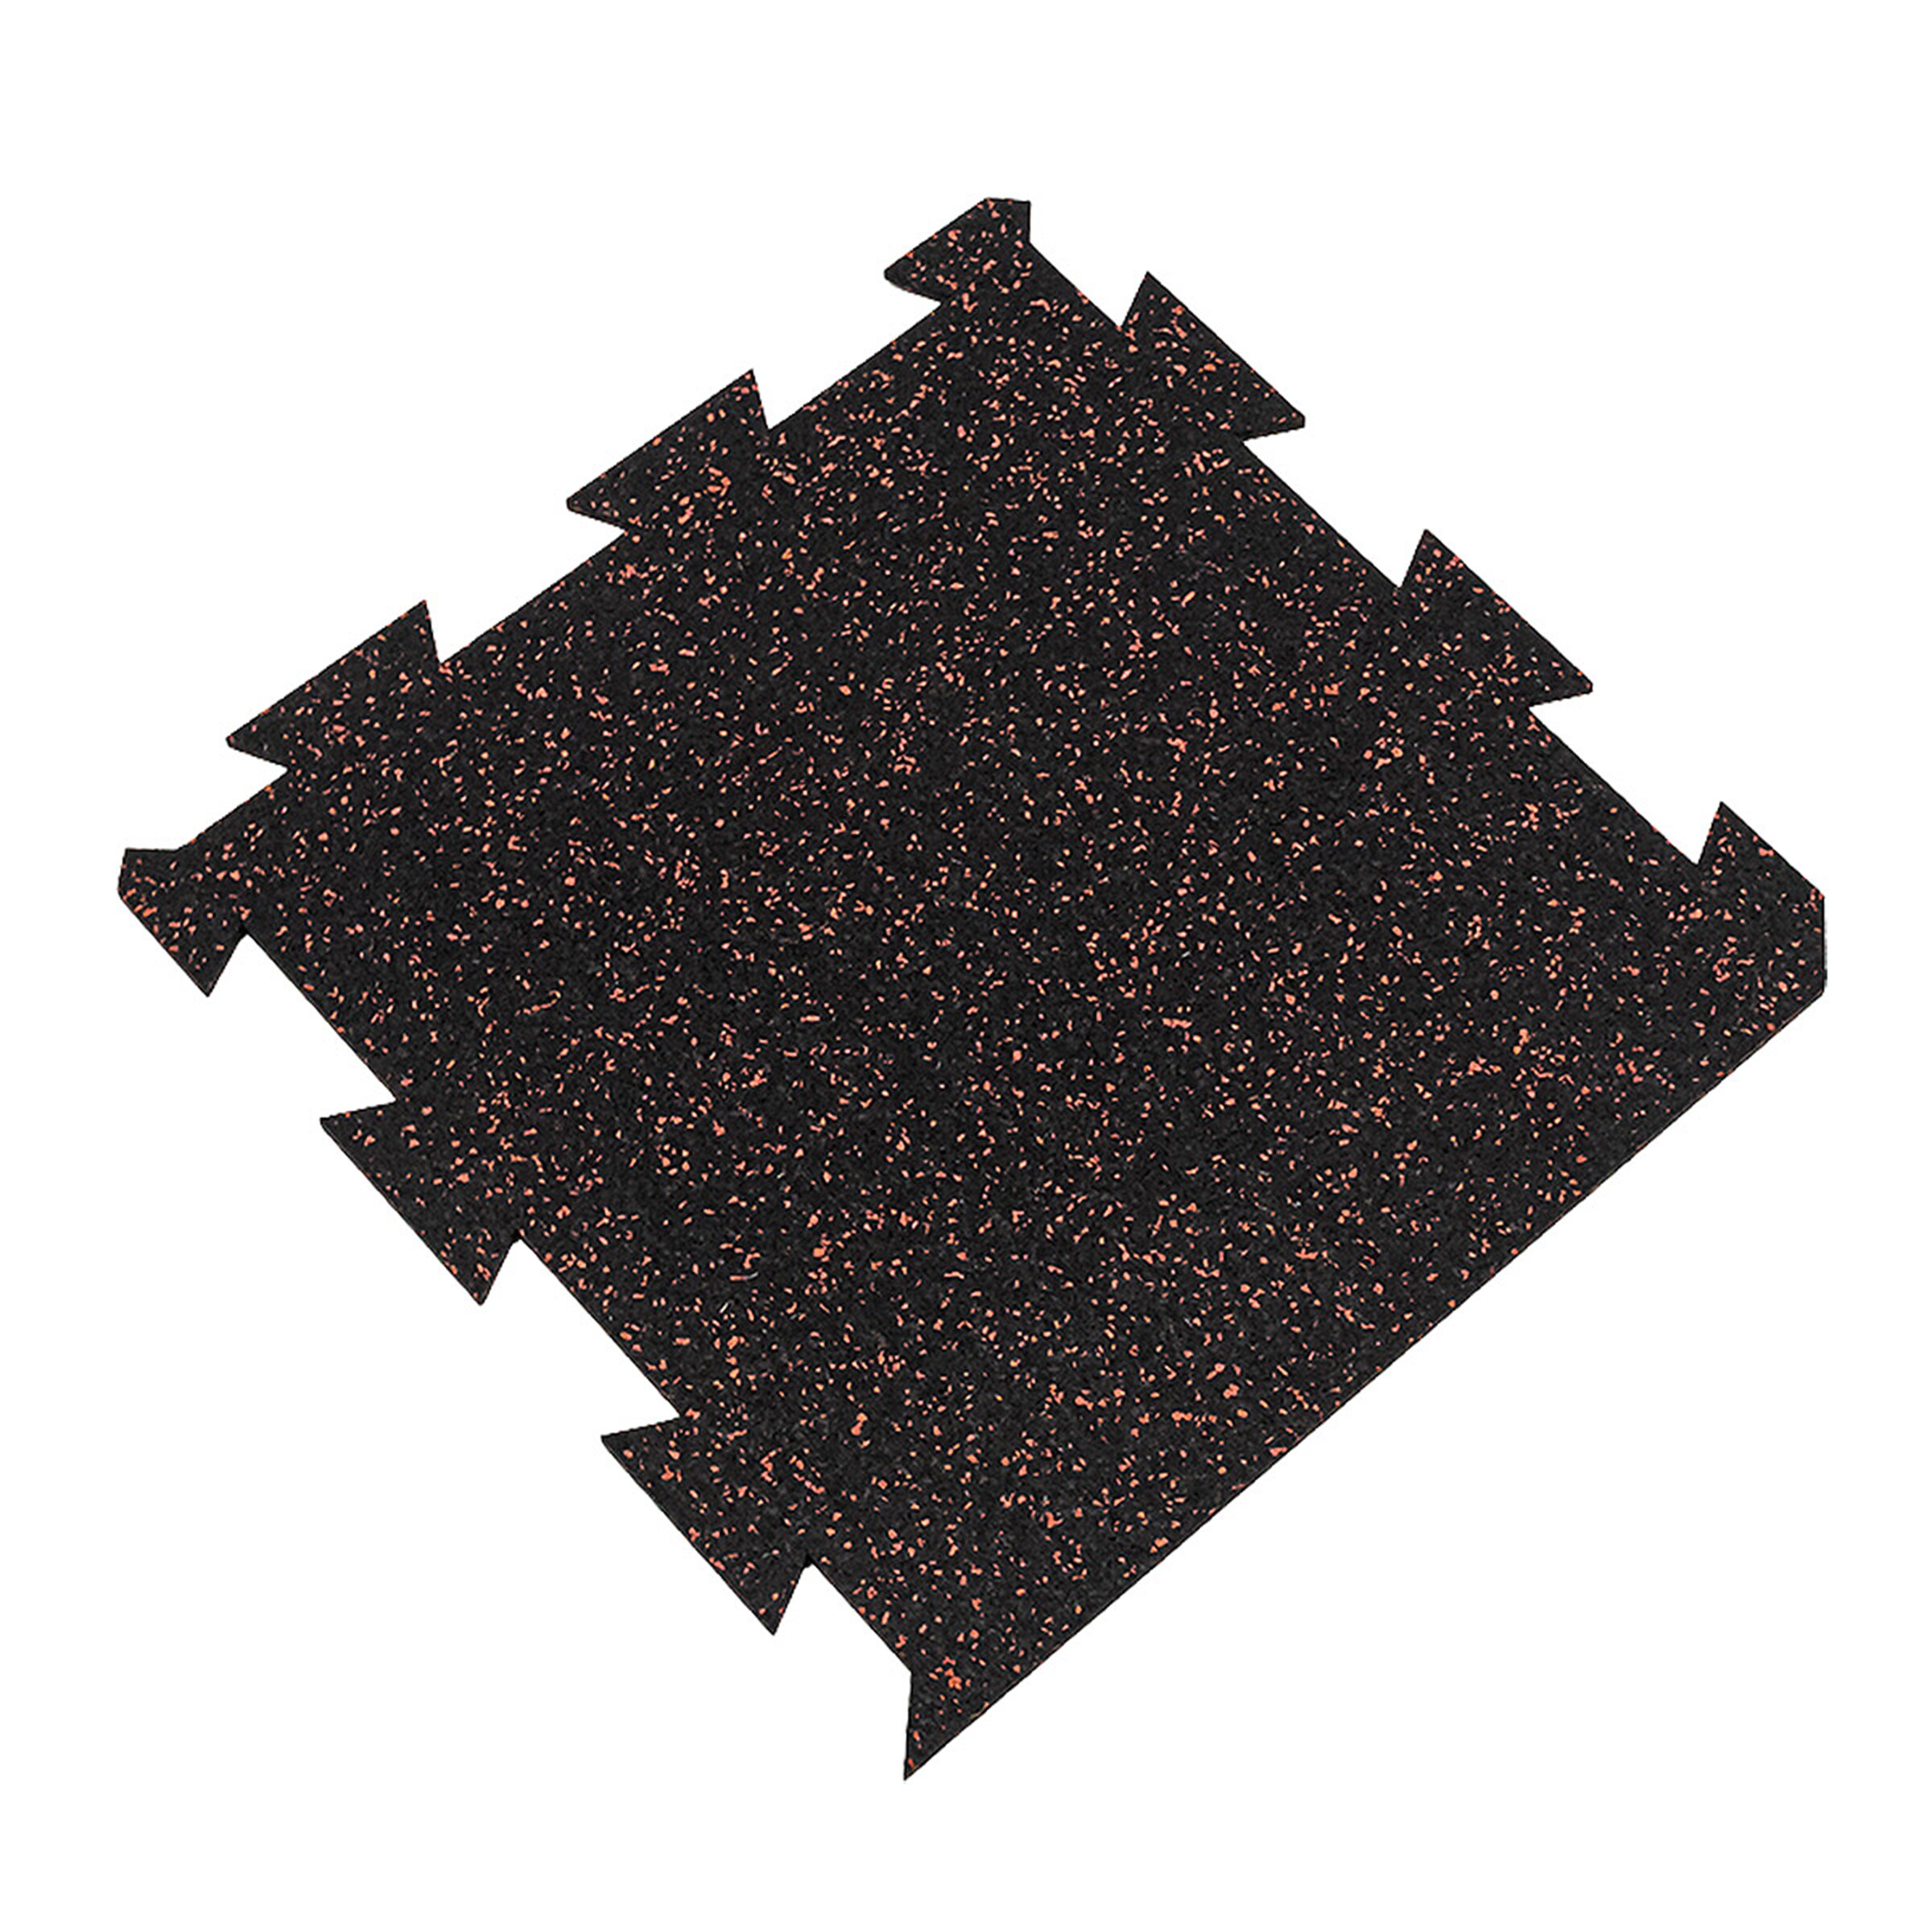 Čierno-červená gumová modulová puzzle dlažba (okraj) FLOMA FitFlo SF1050 - dĺžka 50 cm, šírka 50 cm, výška 0,8 cm